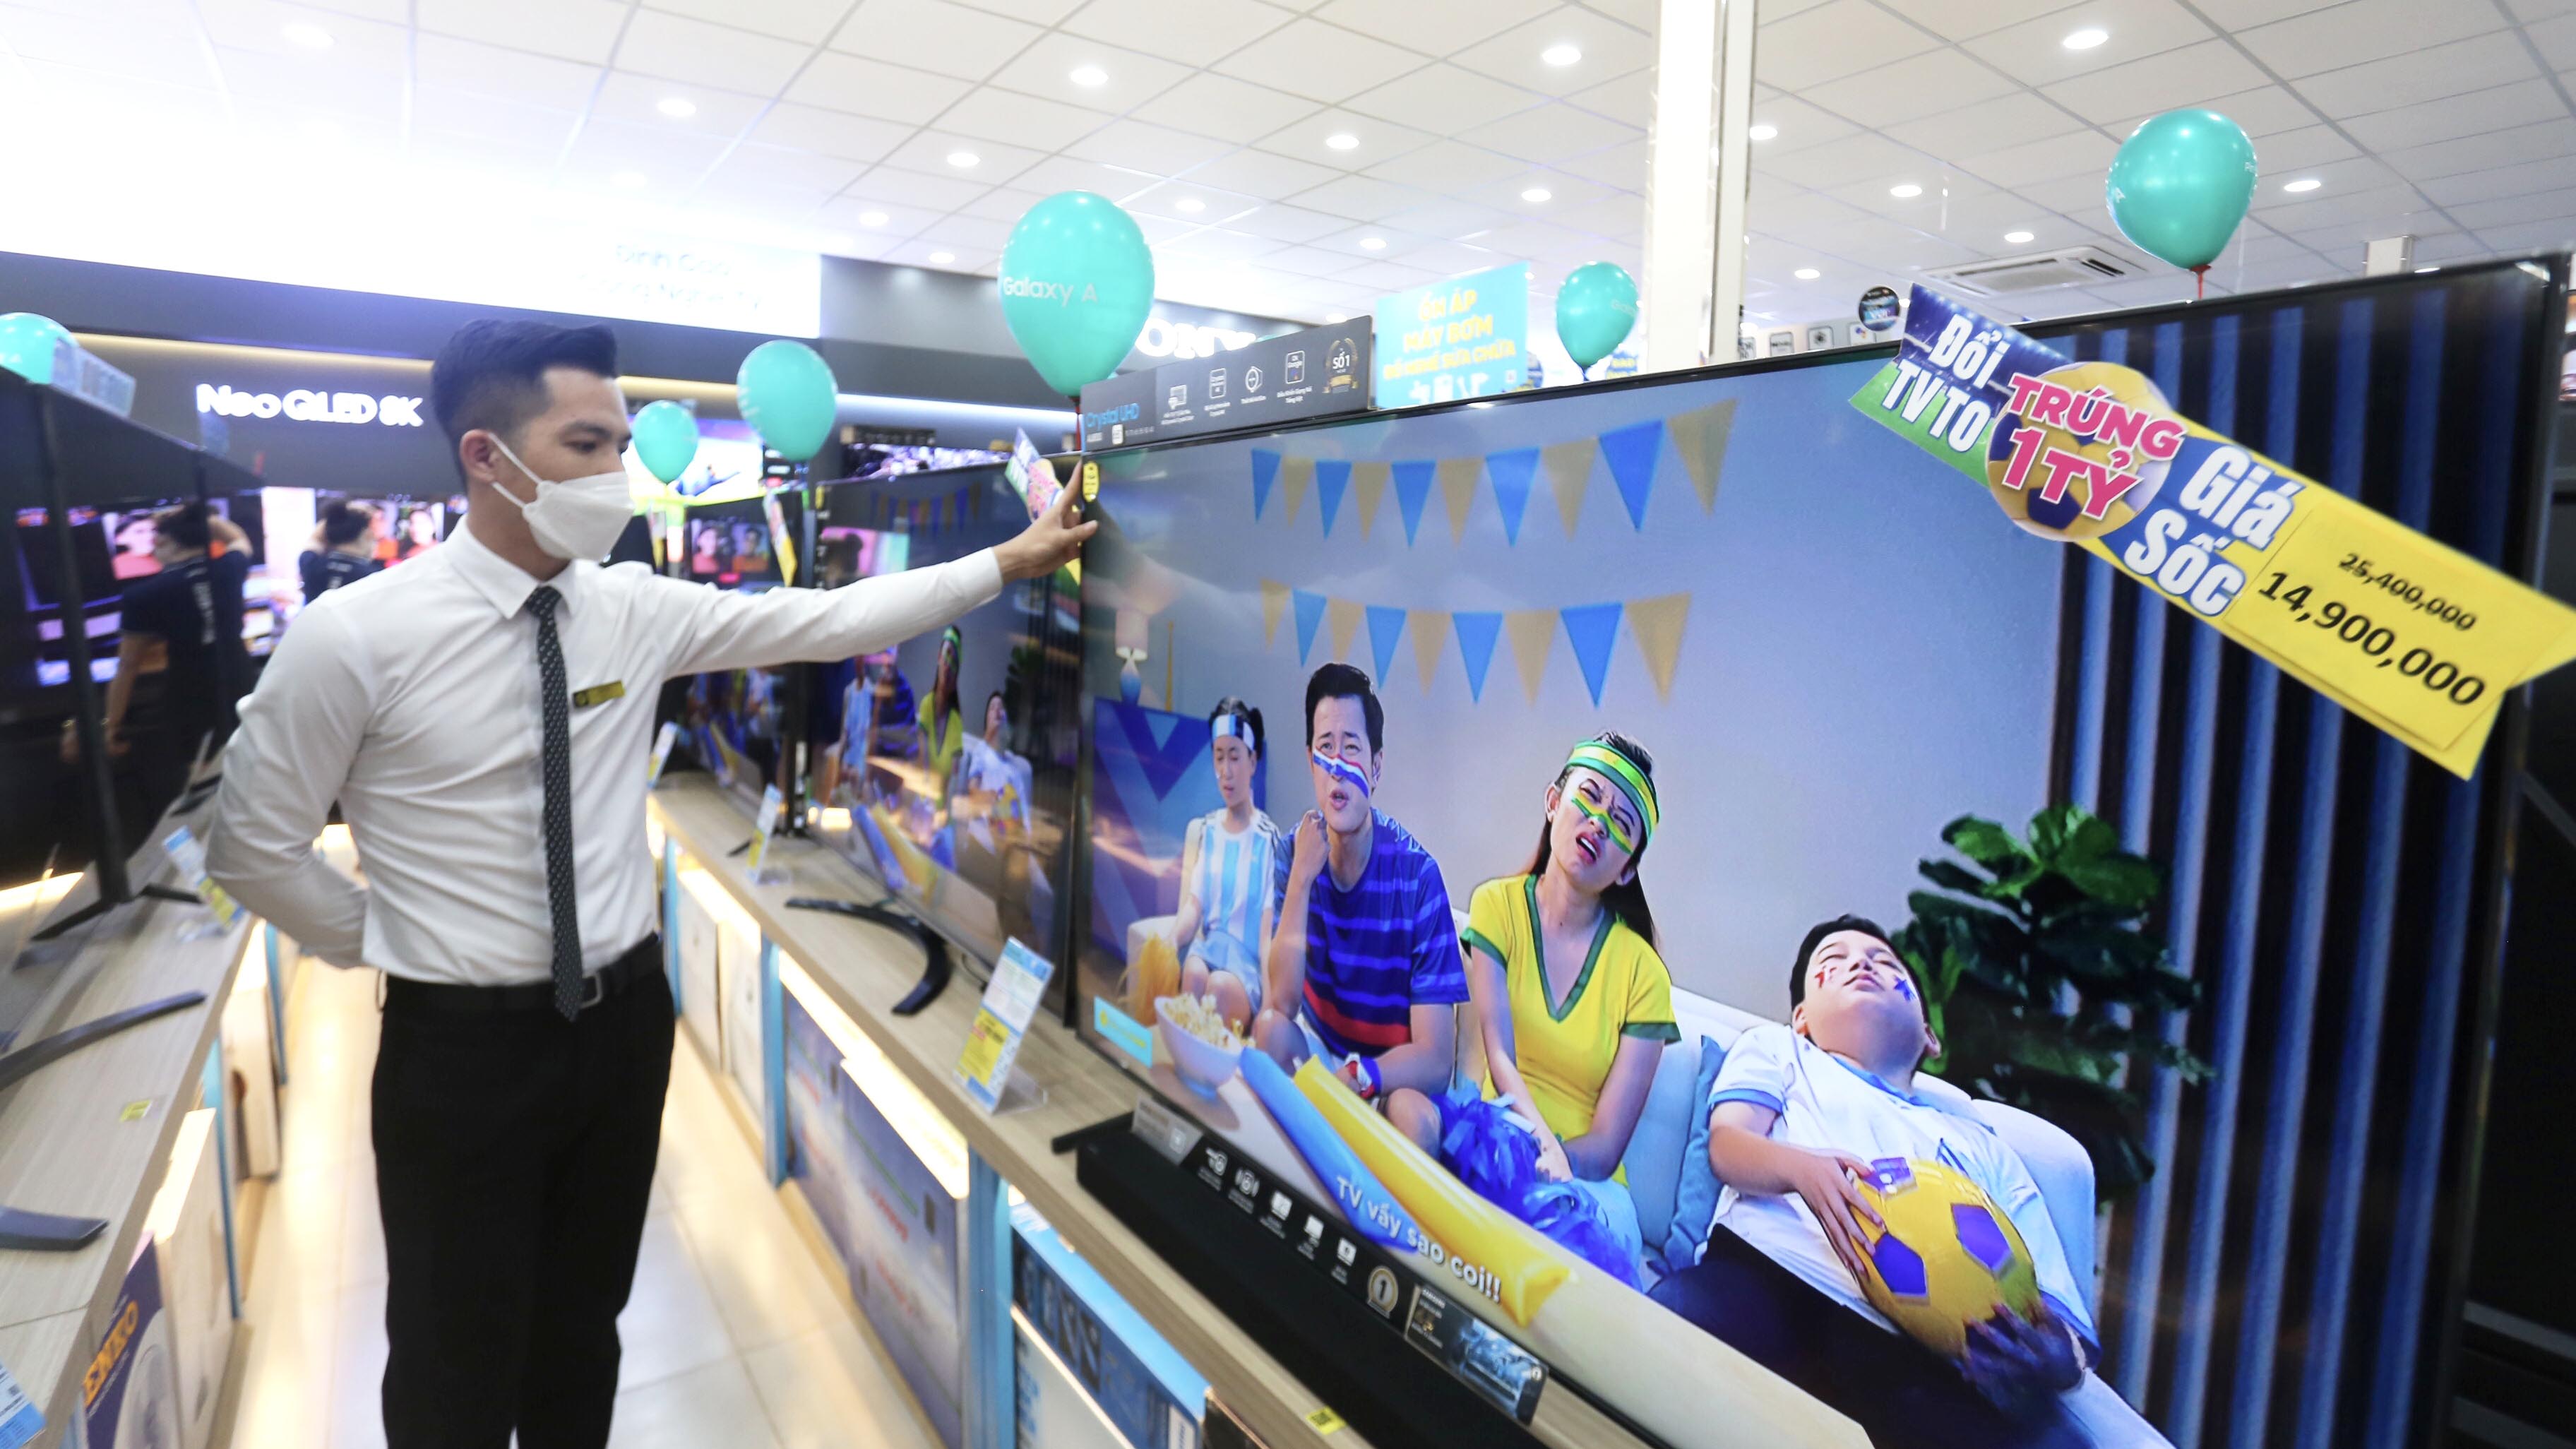 Siêu thị Điện máy Xanh (đường Nguyễn Tất Thành, TP. Pleiku) chuẩn bị nhiều ti vi màn hình lớn để bán trước mùa World Cup. Ảnh: Lê Văn Ngọc